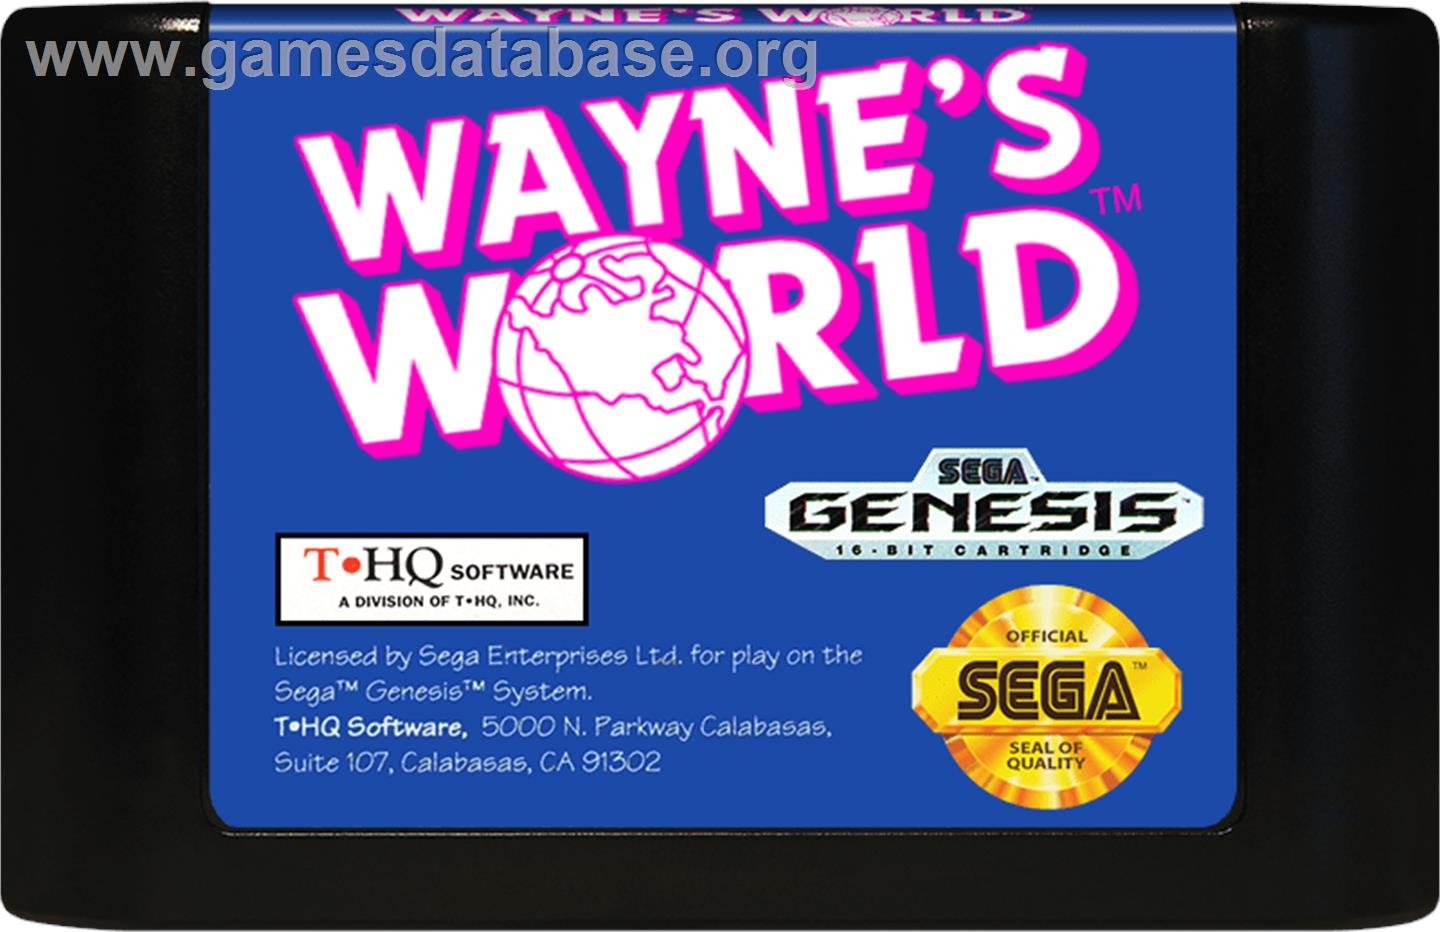 Wayne's World - Sega Genesis - Artwork - Cartridge